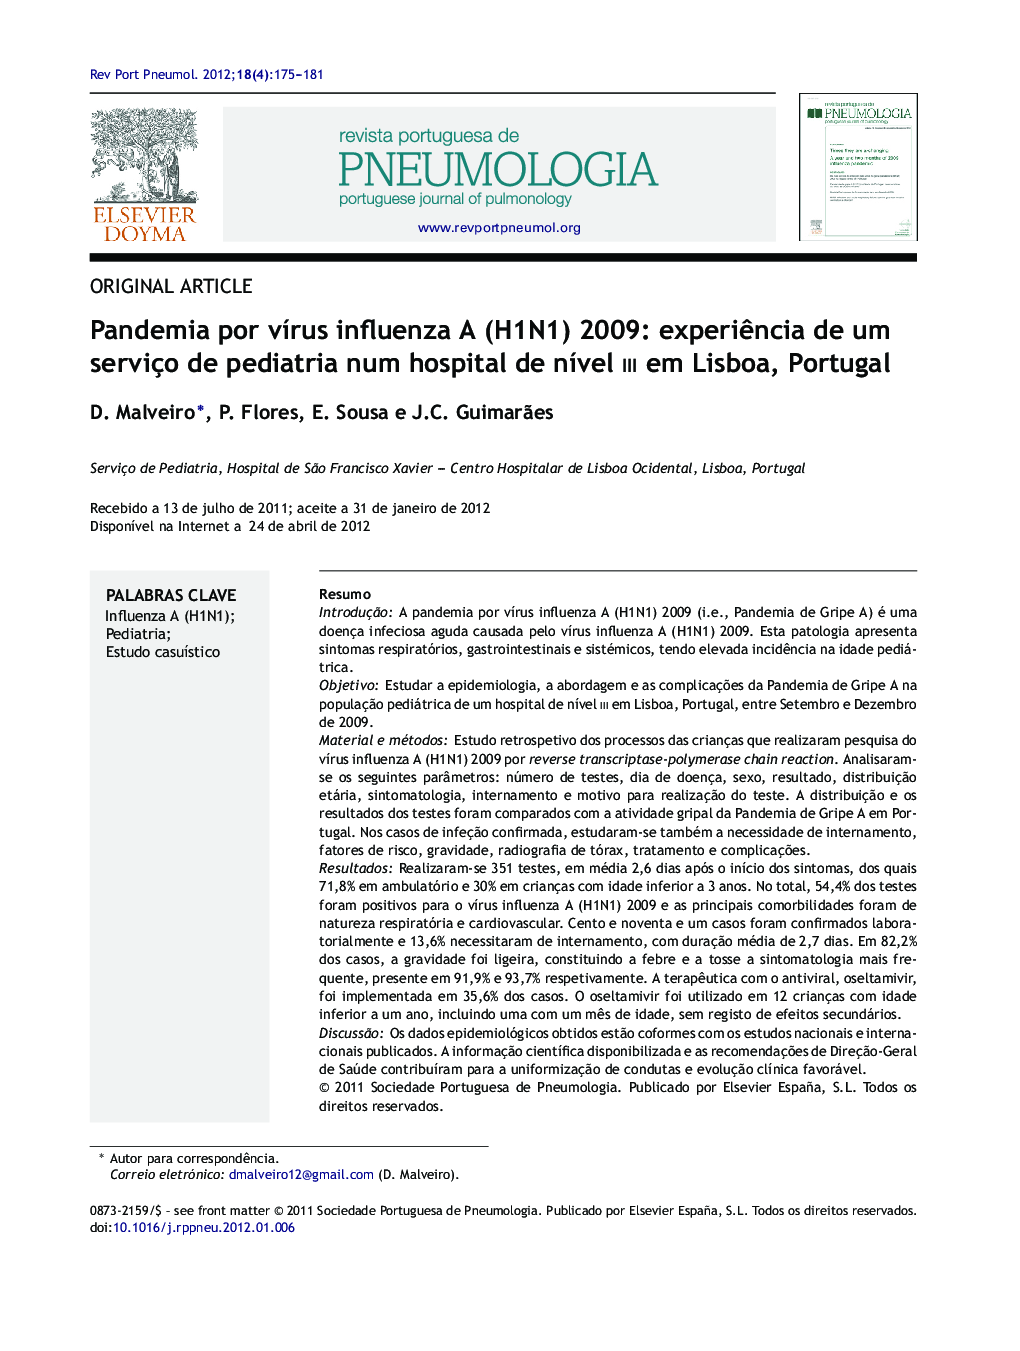 Pandemia por vírus influenza A (H1N1) 2009: experiência de um serviço de pediatria num hospital de nível iii em Lisboa, Portugal